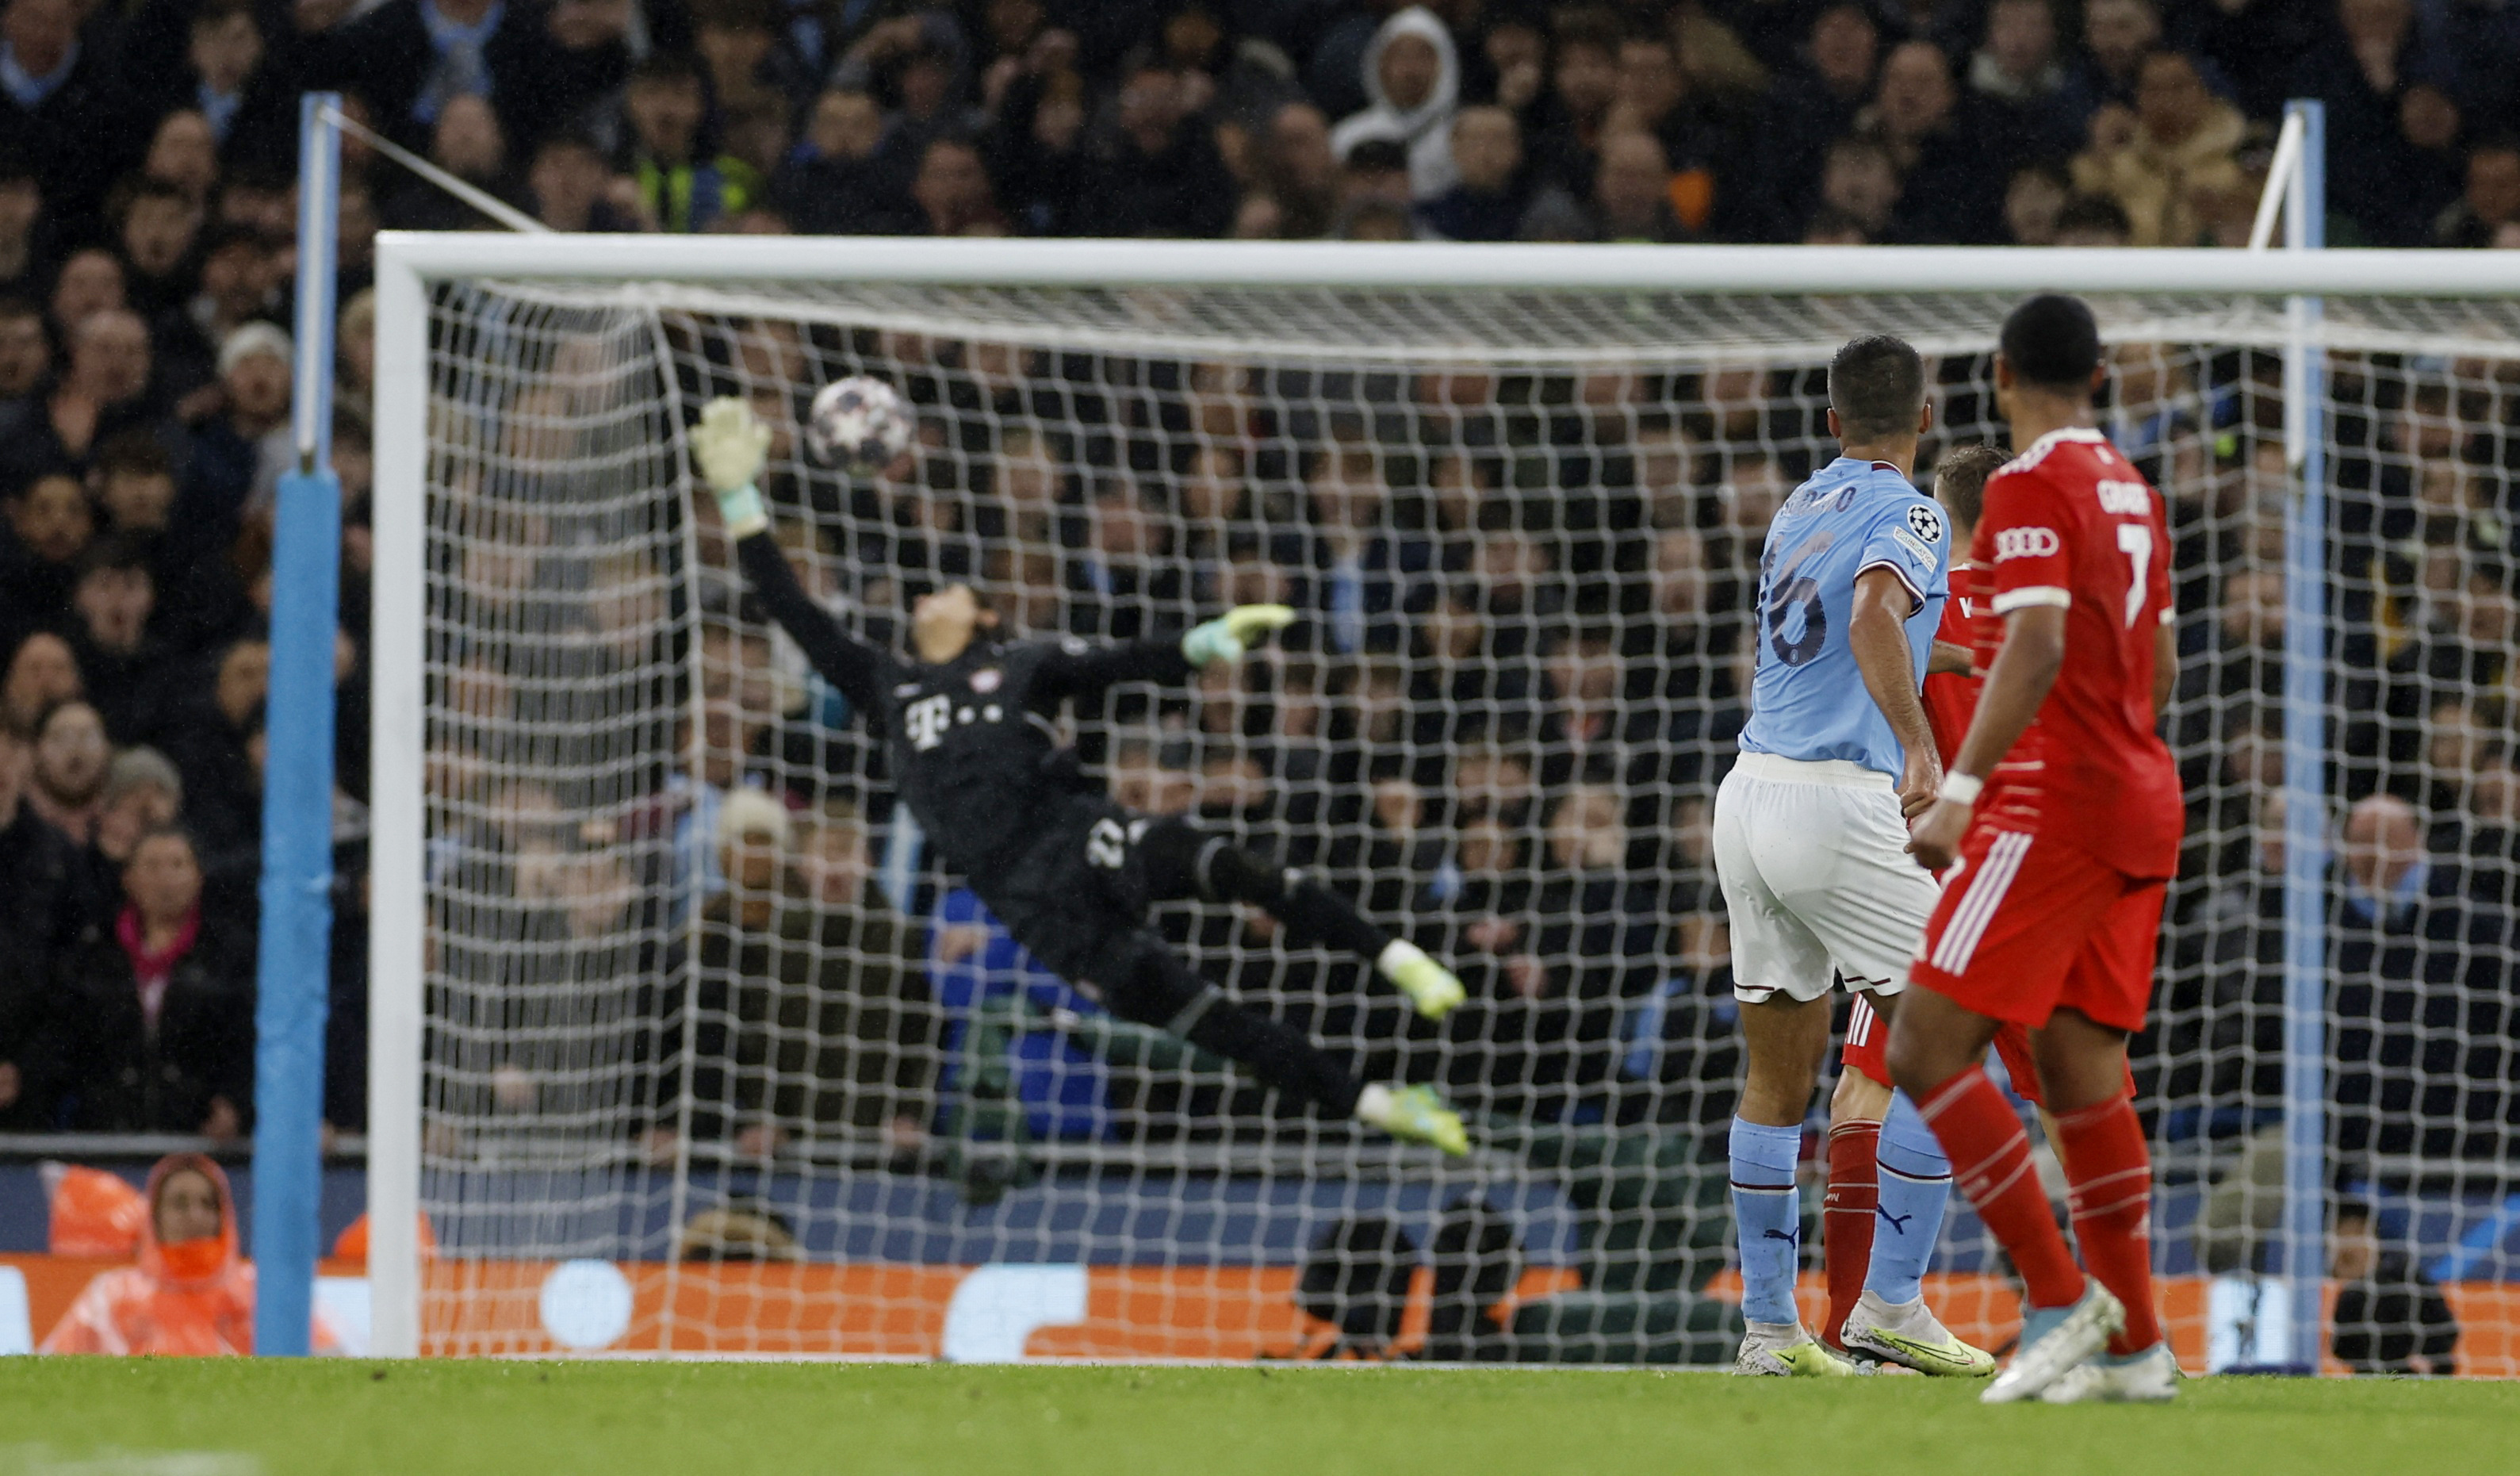 El espectacular gol de Rodri para poner en ventaja a Manchester City sobre Bayern Múnich en la Champions League